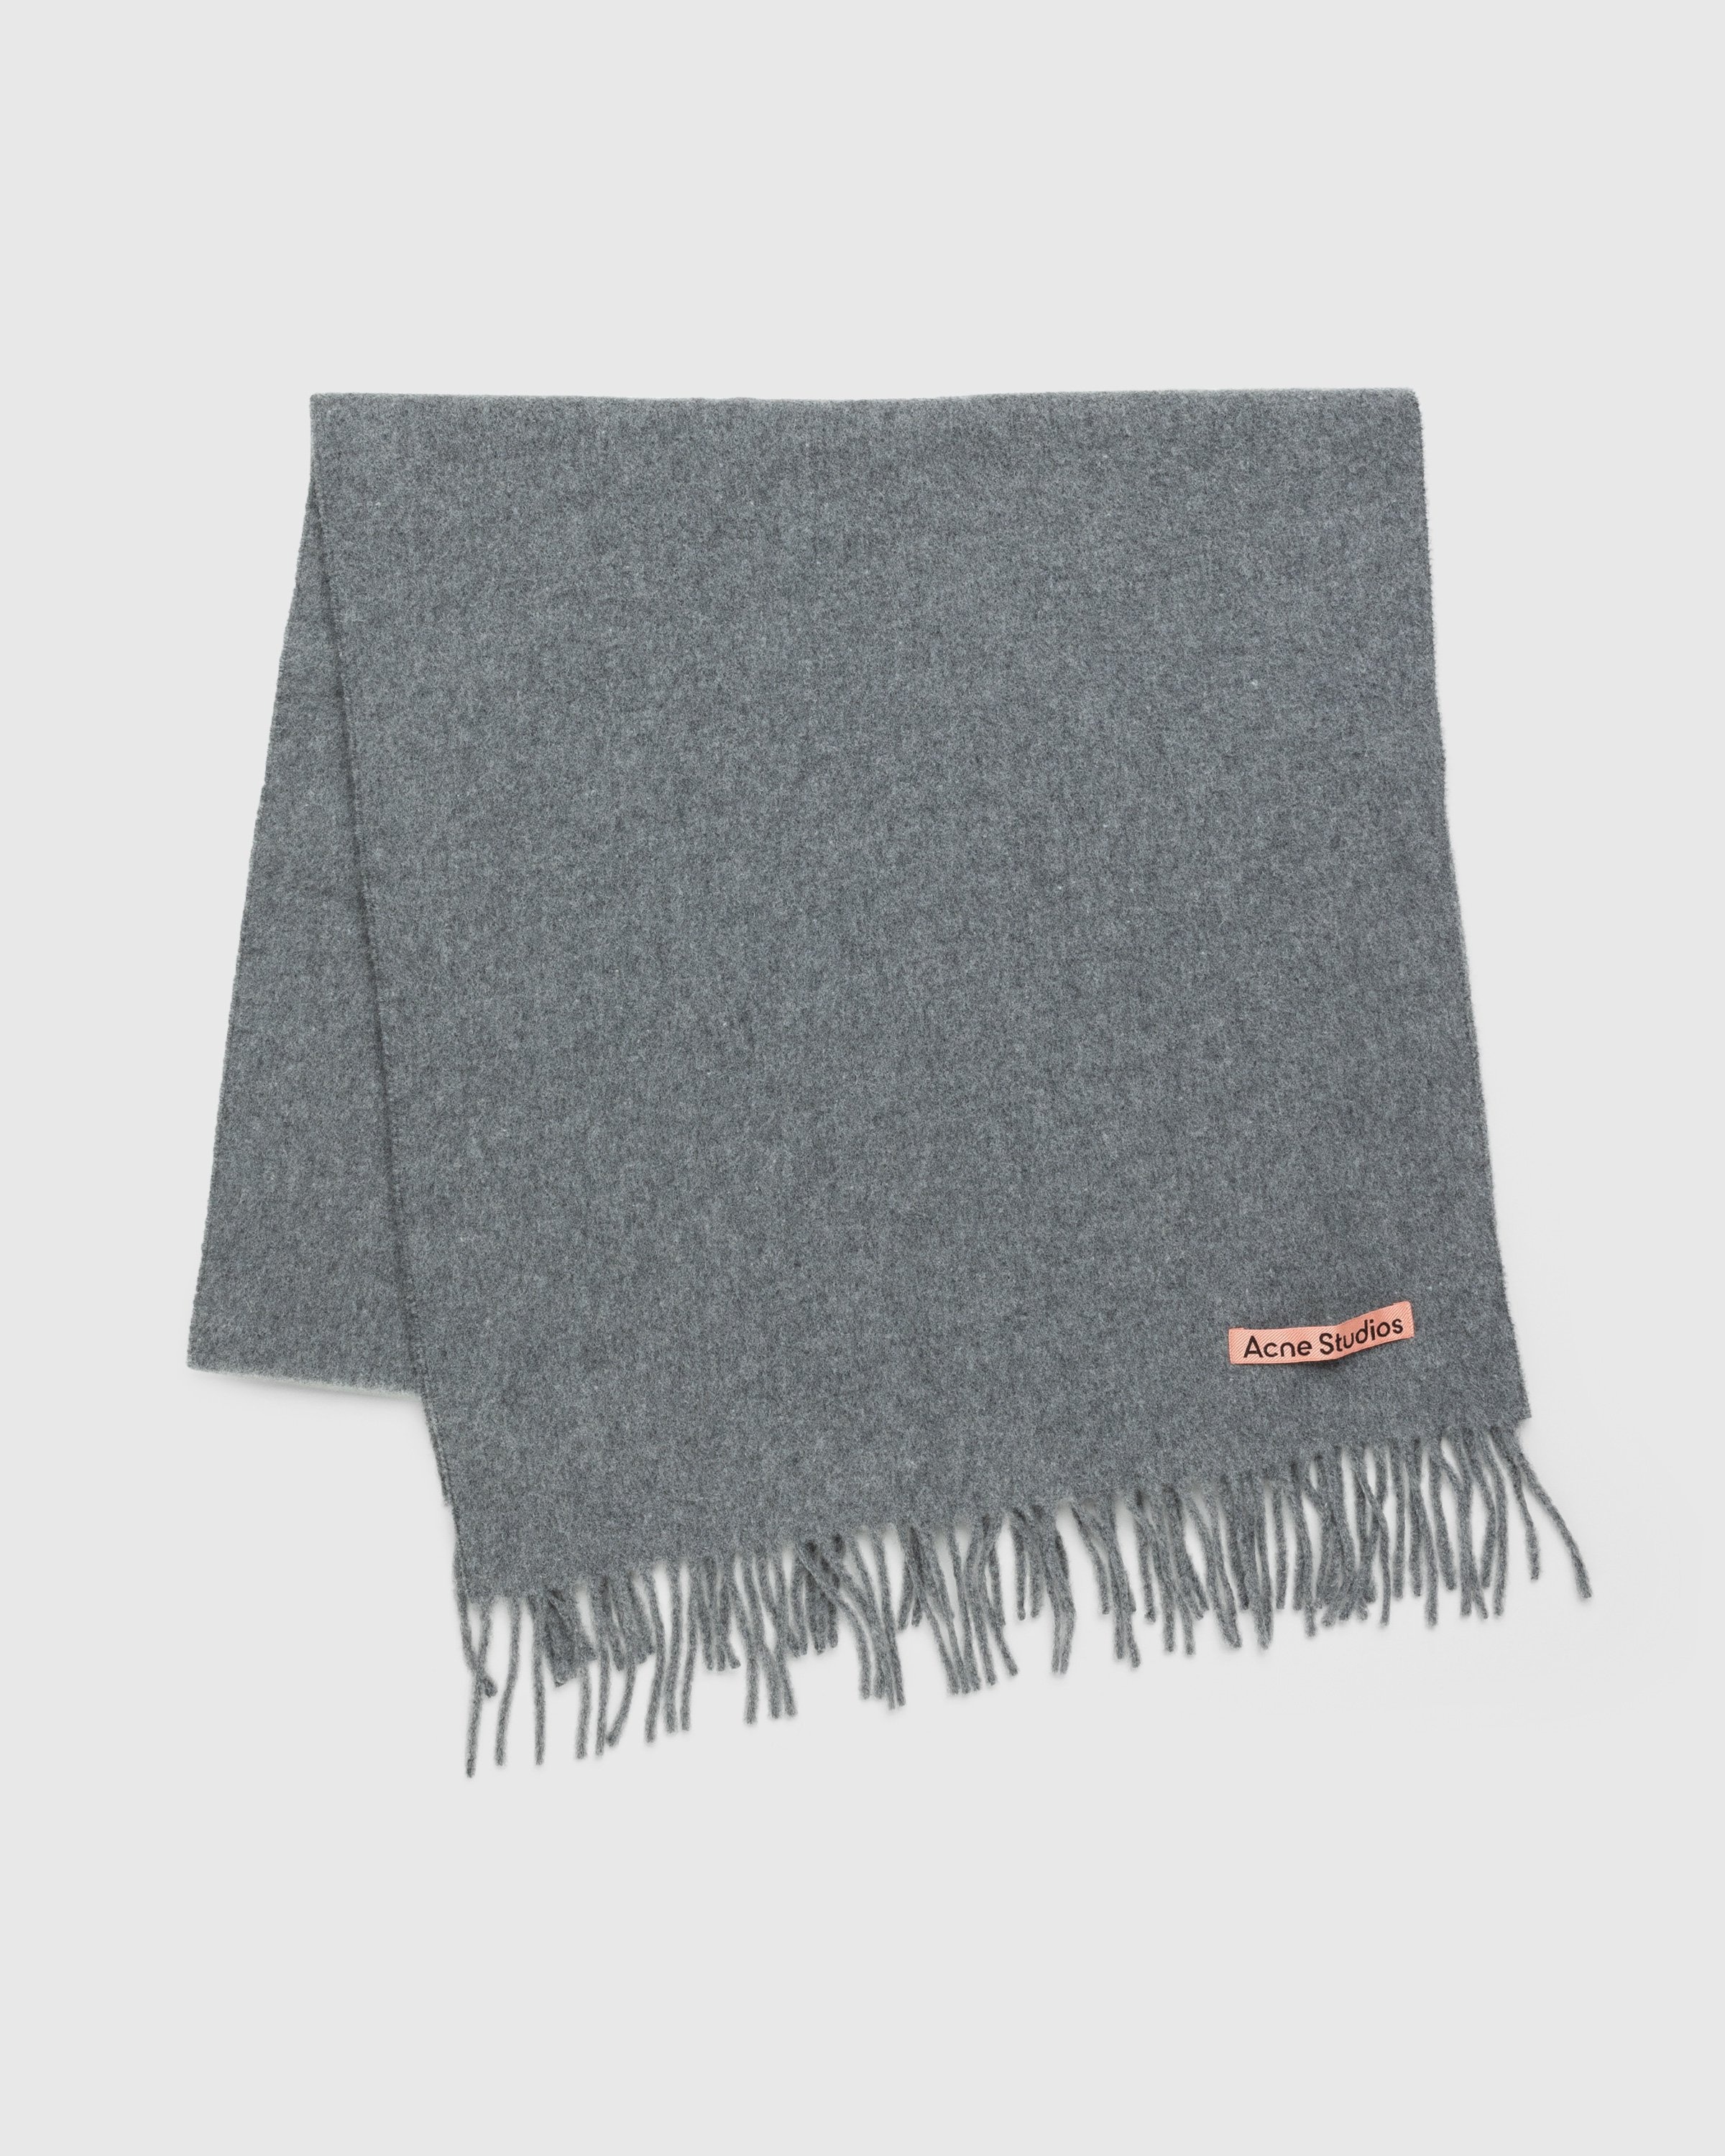 Acne Studios – Wool Fringe Scarf Oversized Grey Melange - Scarves - Grey - Image 2